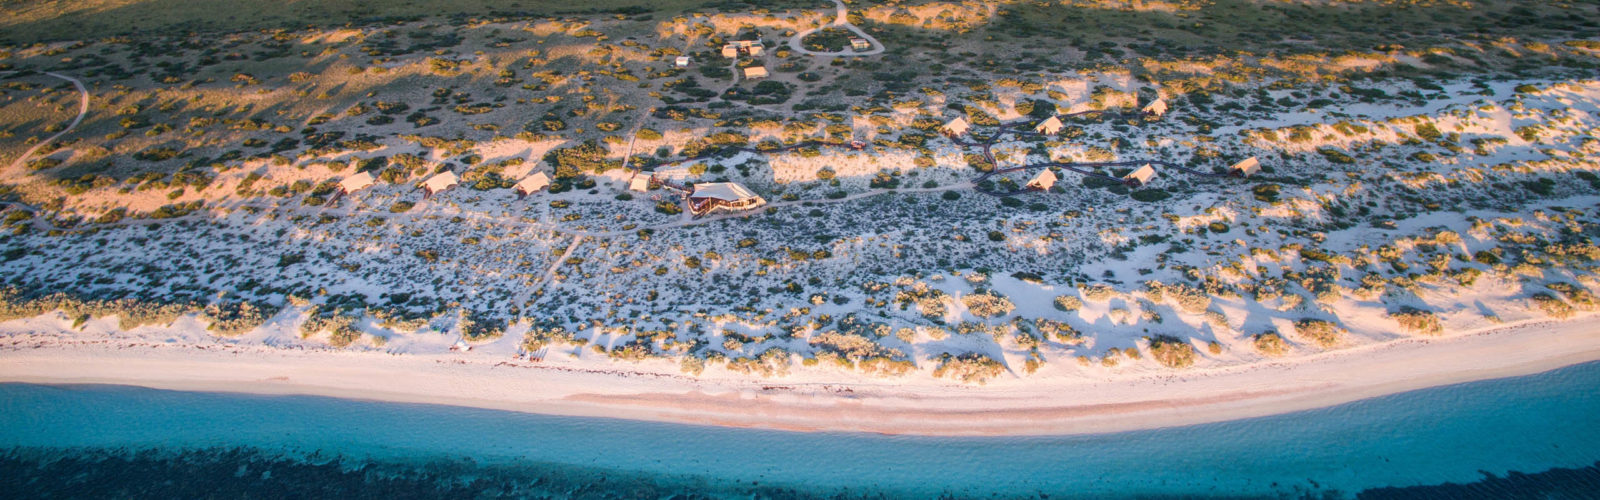 Aerial view of Sal Salis, North West Australia